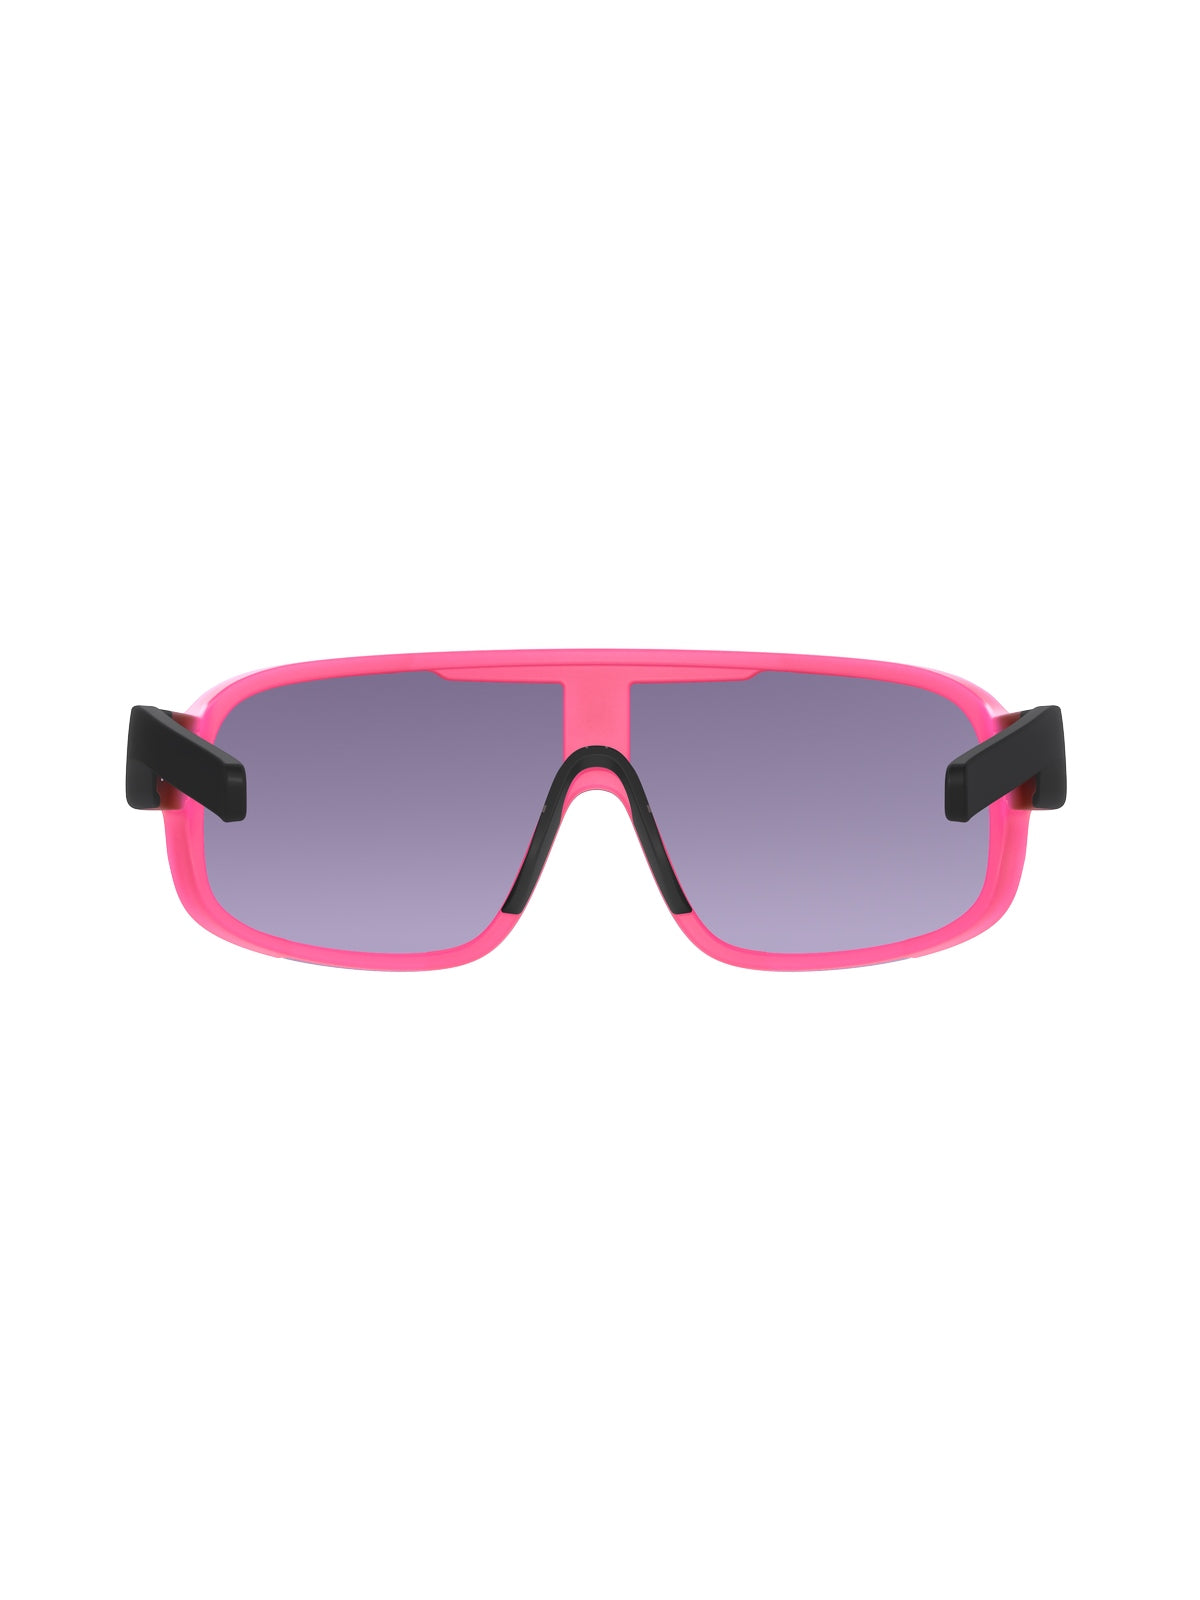 Okulary rowerowe POC Aspire fluo pink/black